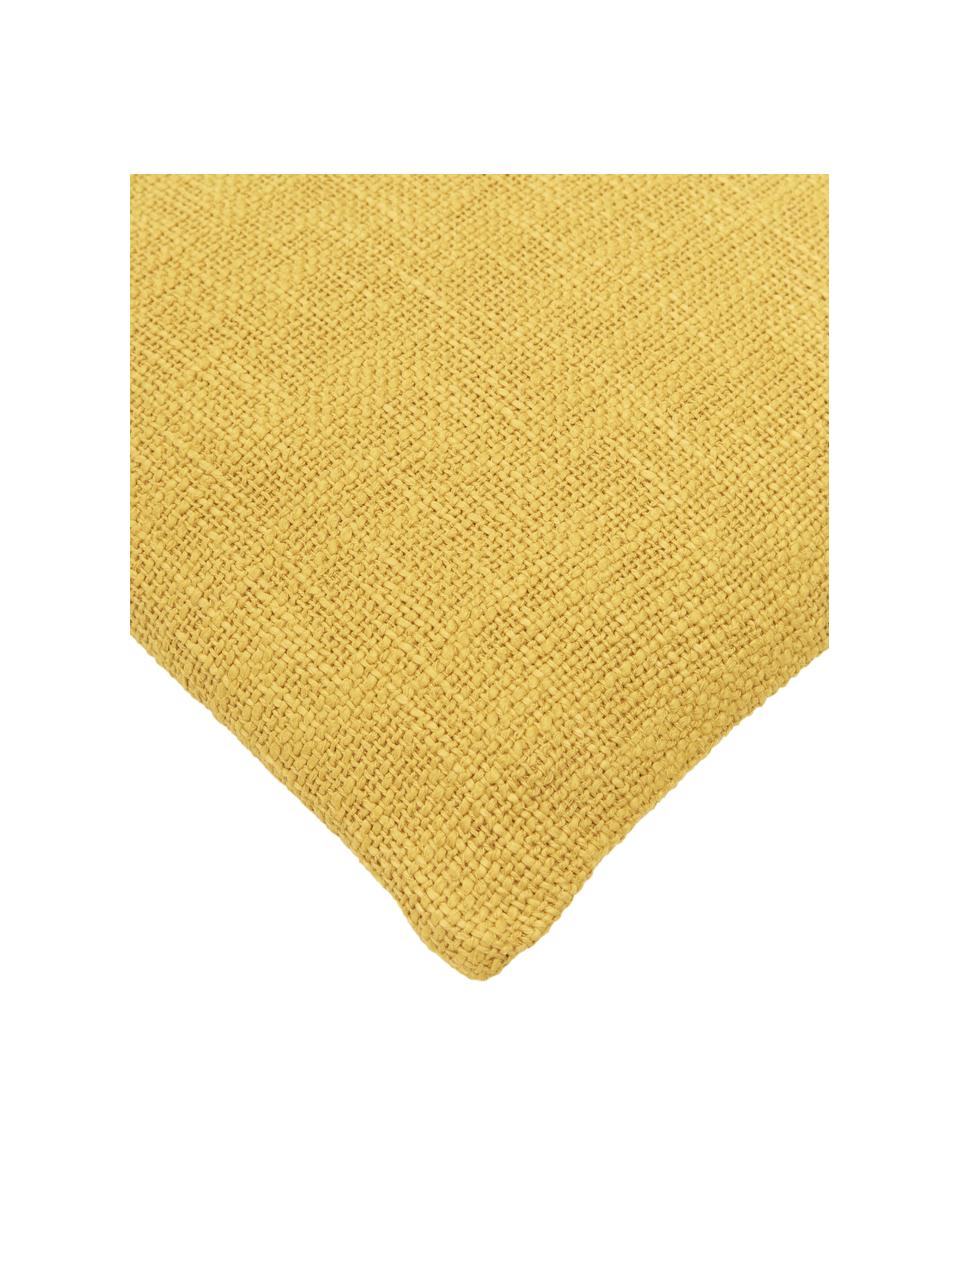 Federa arredo color giallo Anise, 100% cotone, Giallo, Larg. 45 x Lung. 45 cm